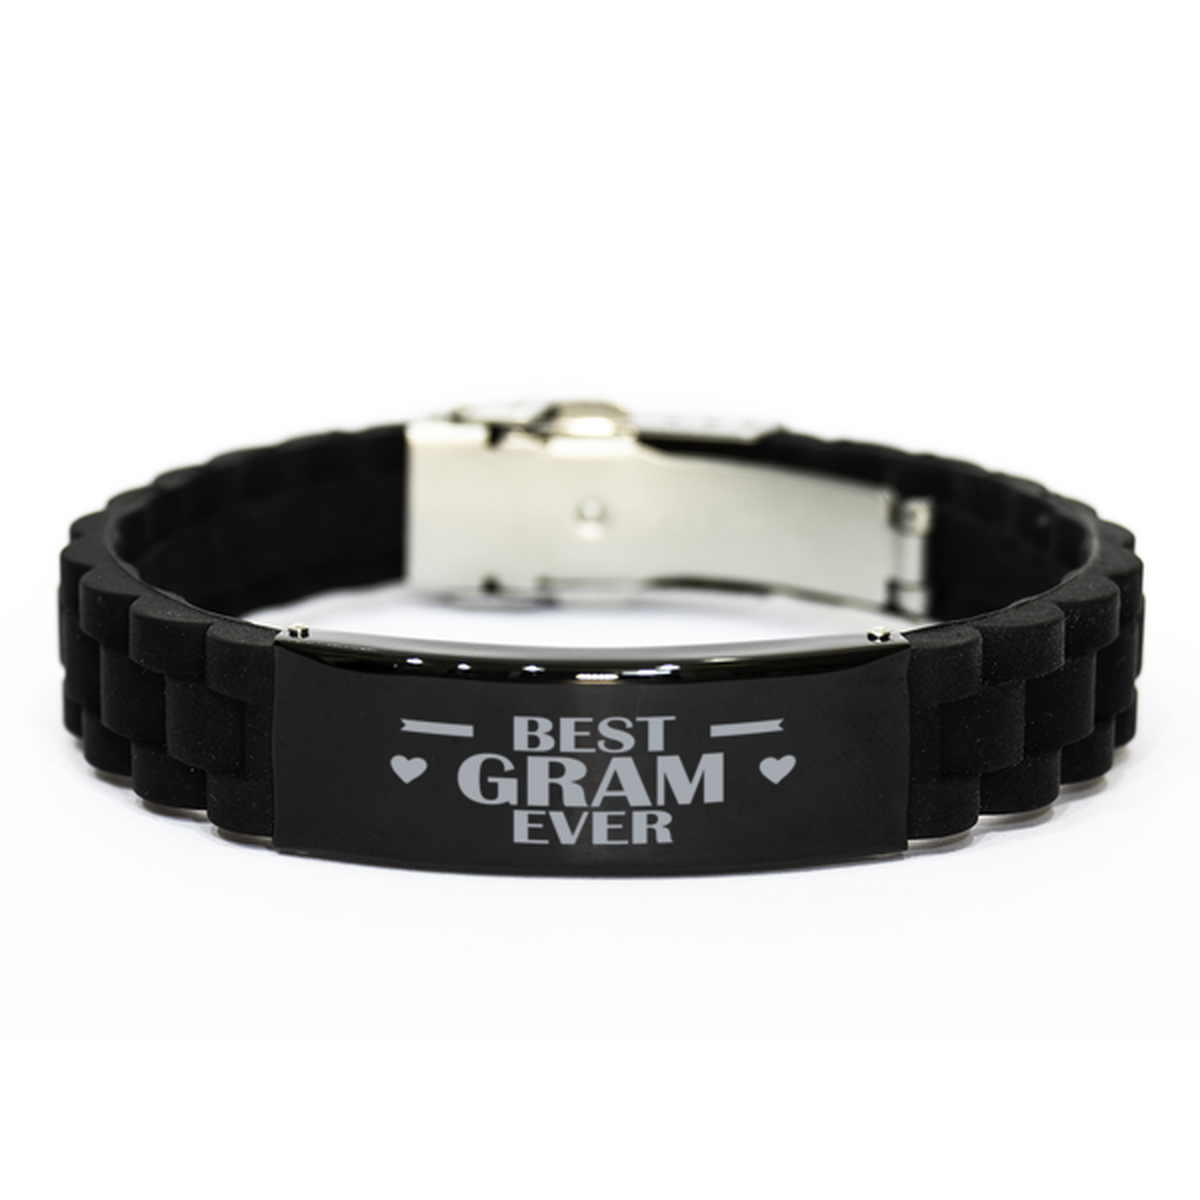 Best Gram Ever Gram Gifts, Funny Black Engraved Bracelet For Gram, Family Gifts For Women